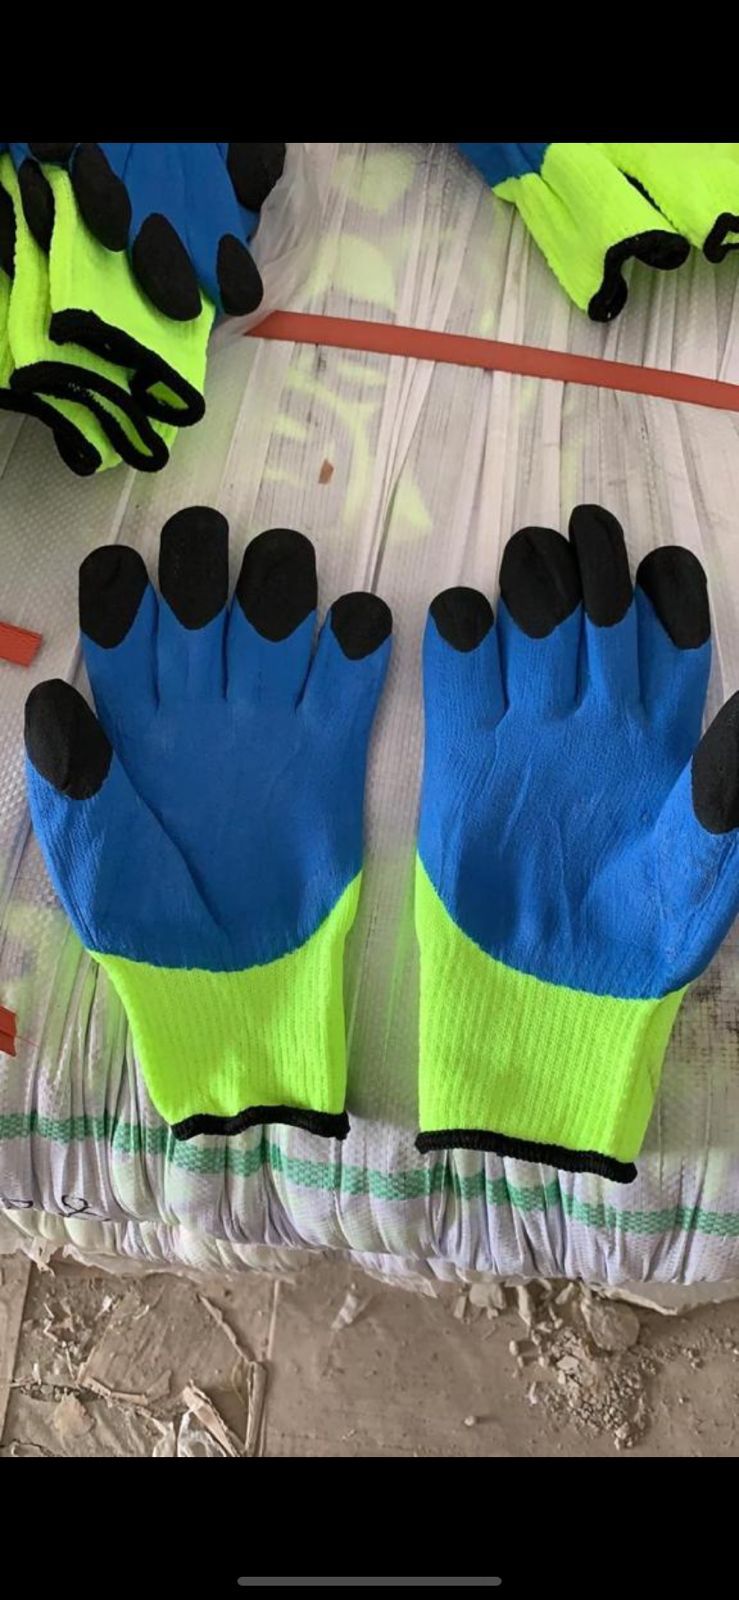 перчатки Салатовые с синим обливом черный палец, зима.